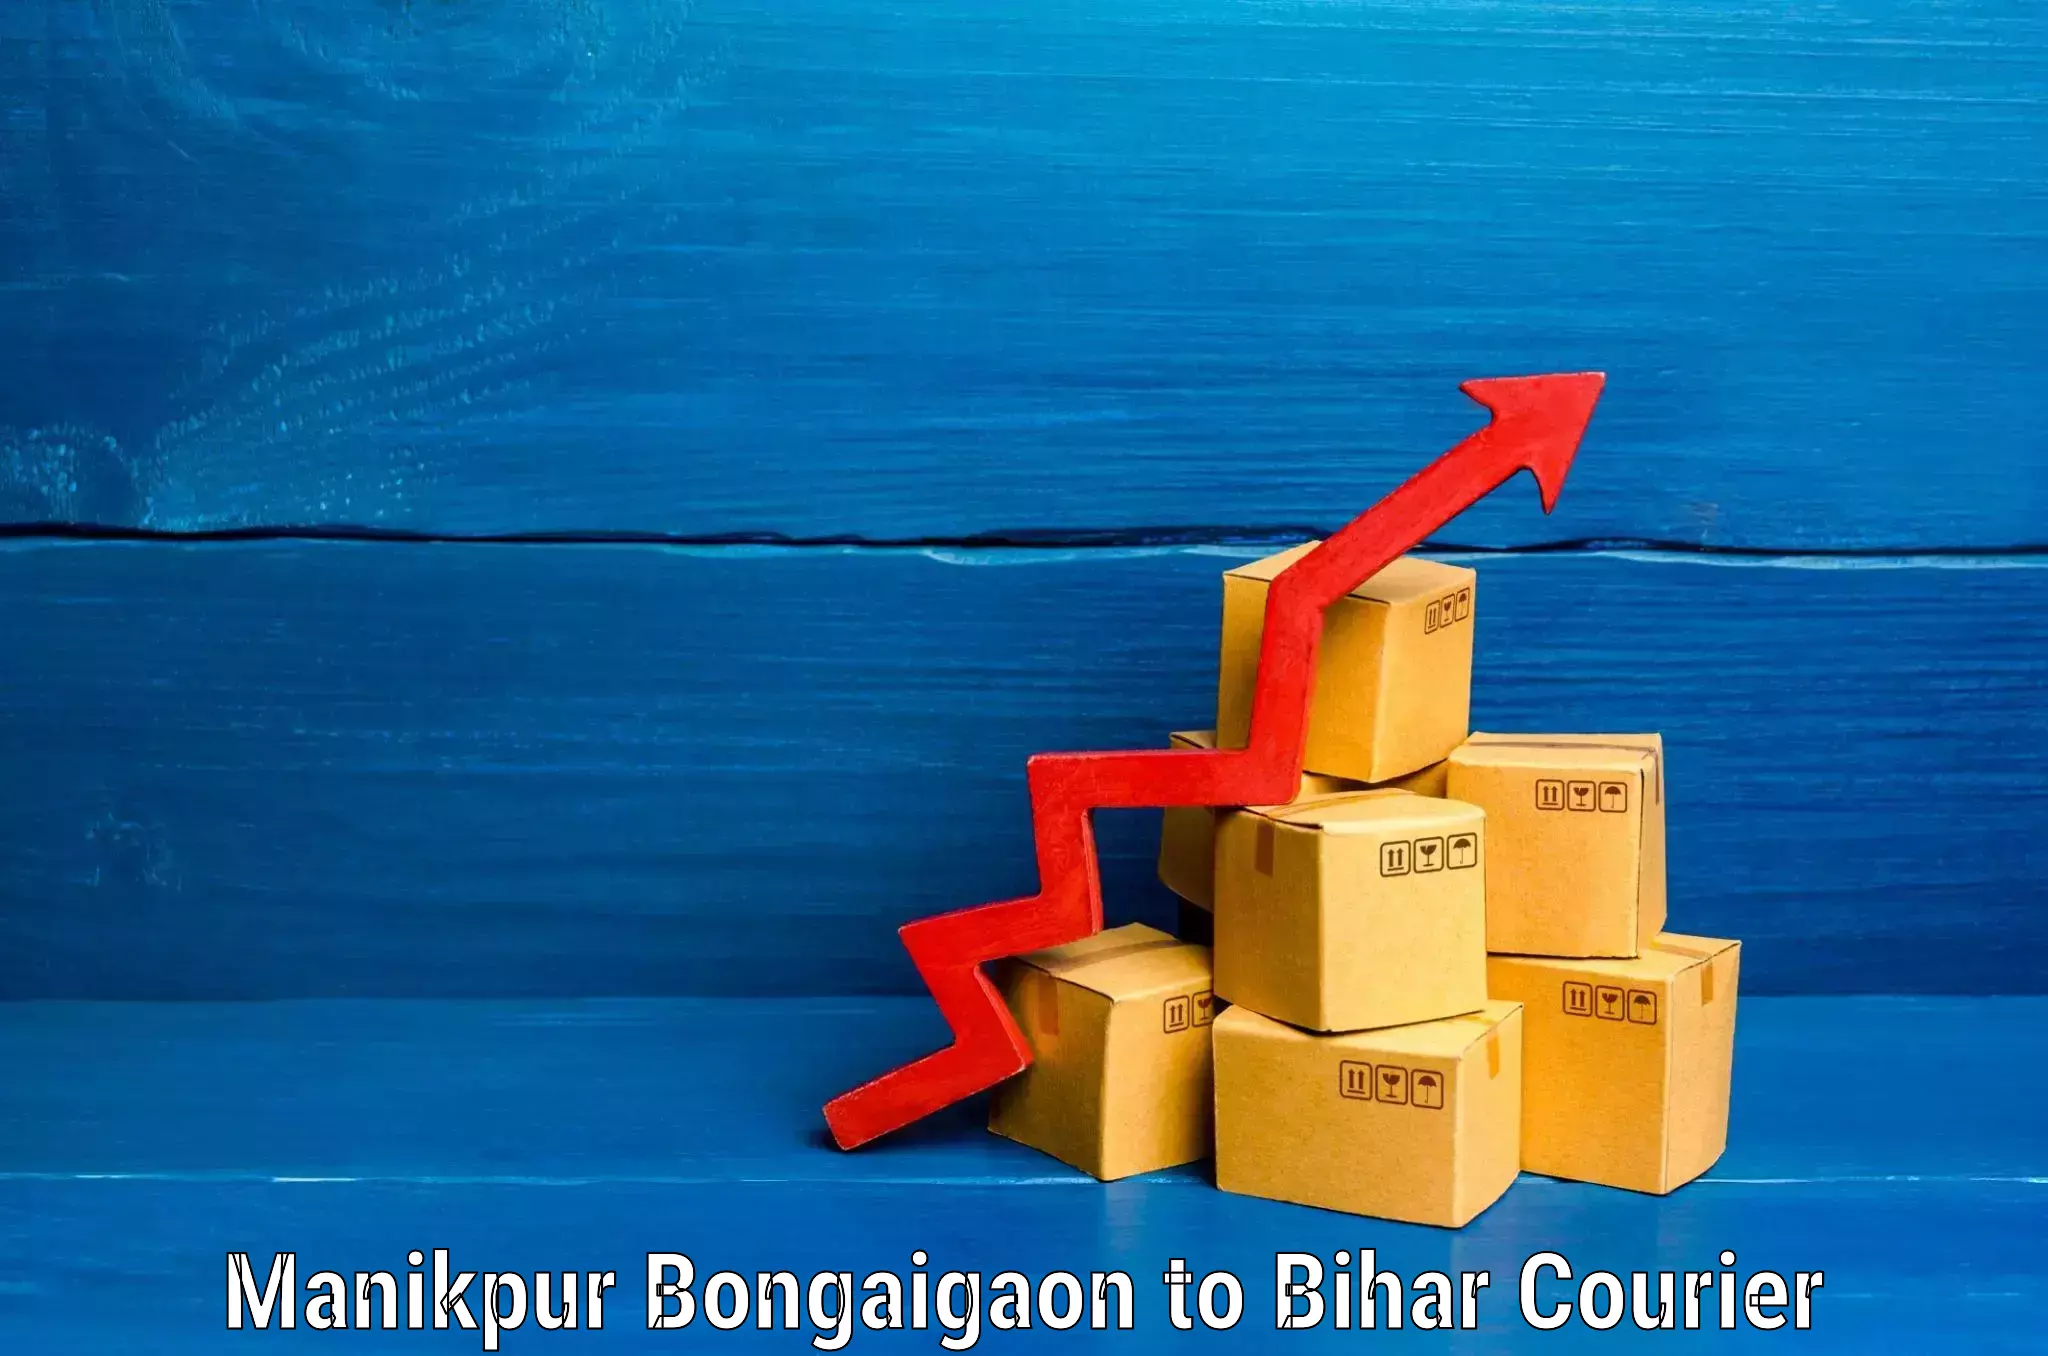 Baggage shipping schedule Manikpur Bongaigaon to Bihar